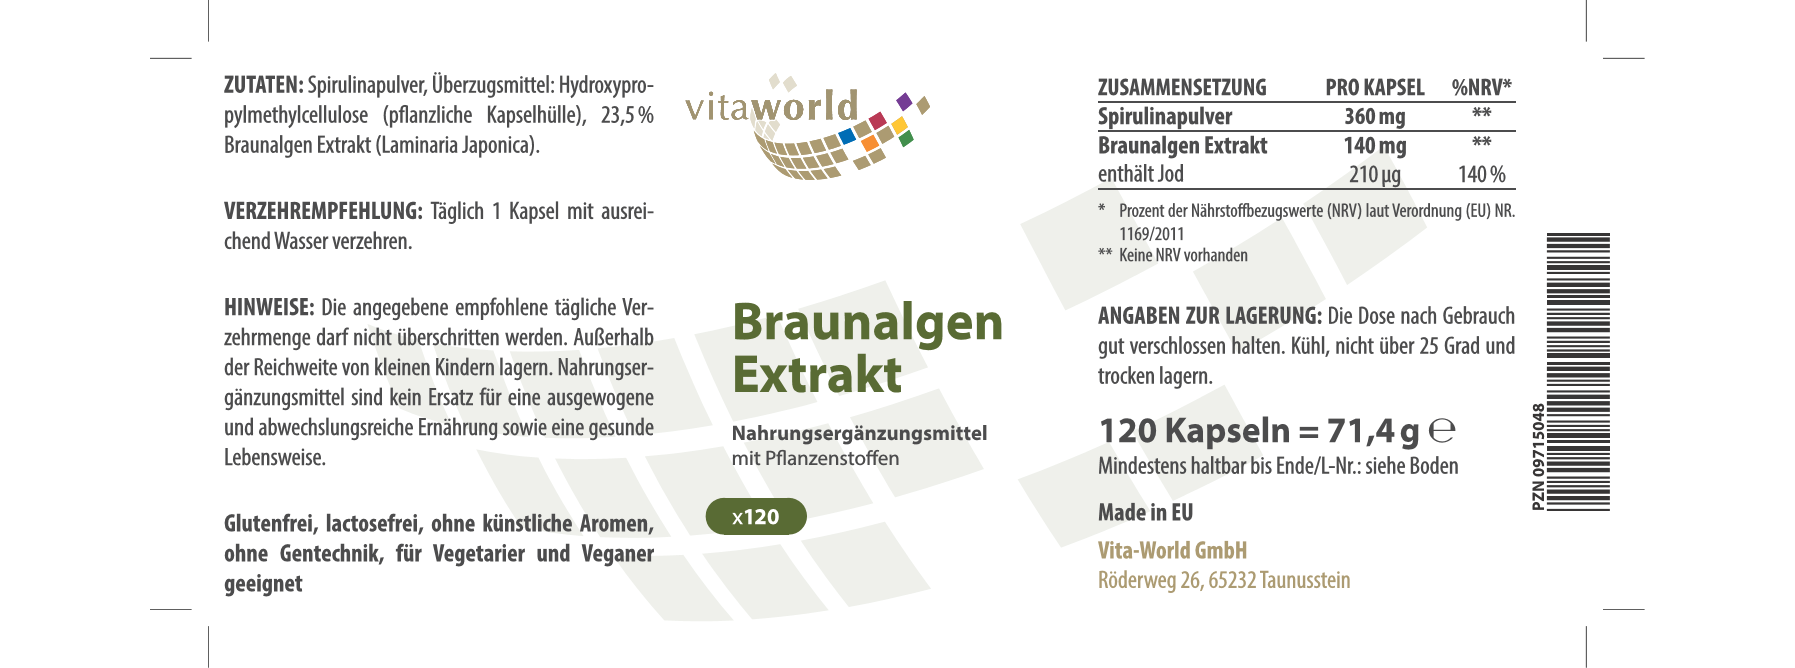 Braunalgen Extrakt (120 Kps)